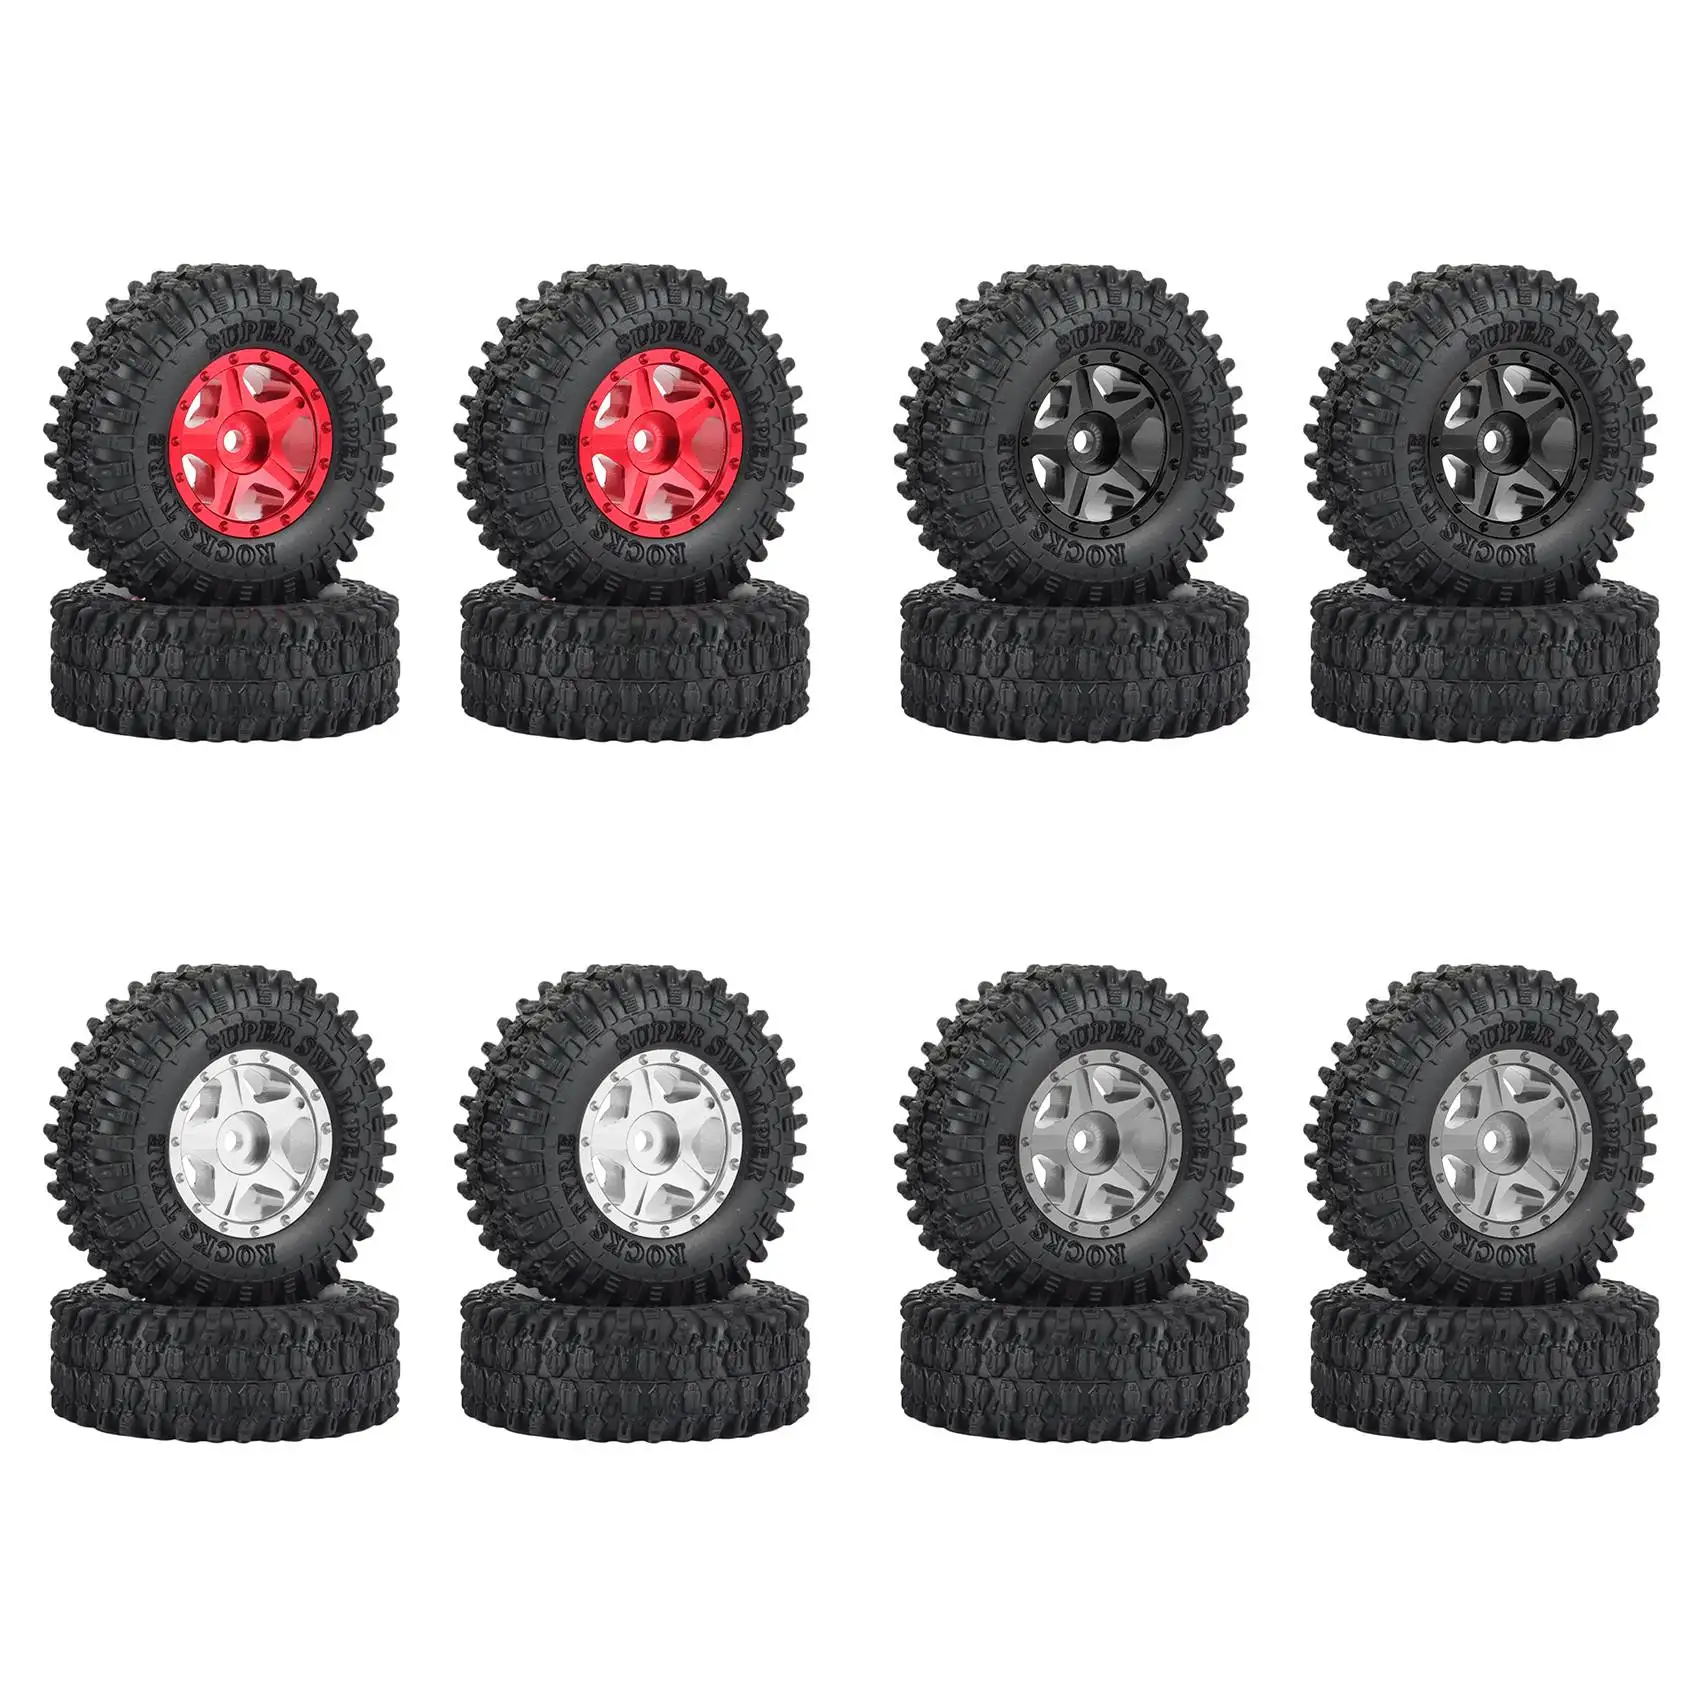 

4PCS 51x18mm 1.0Inch Beadlock Wheel Rims Tires Set for 1/24 RC Crawler Car Axial SCX24 90081 AXI00001 AXI00002 Parts